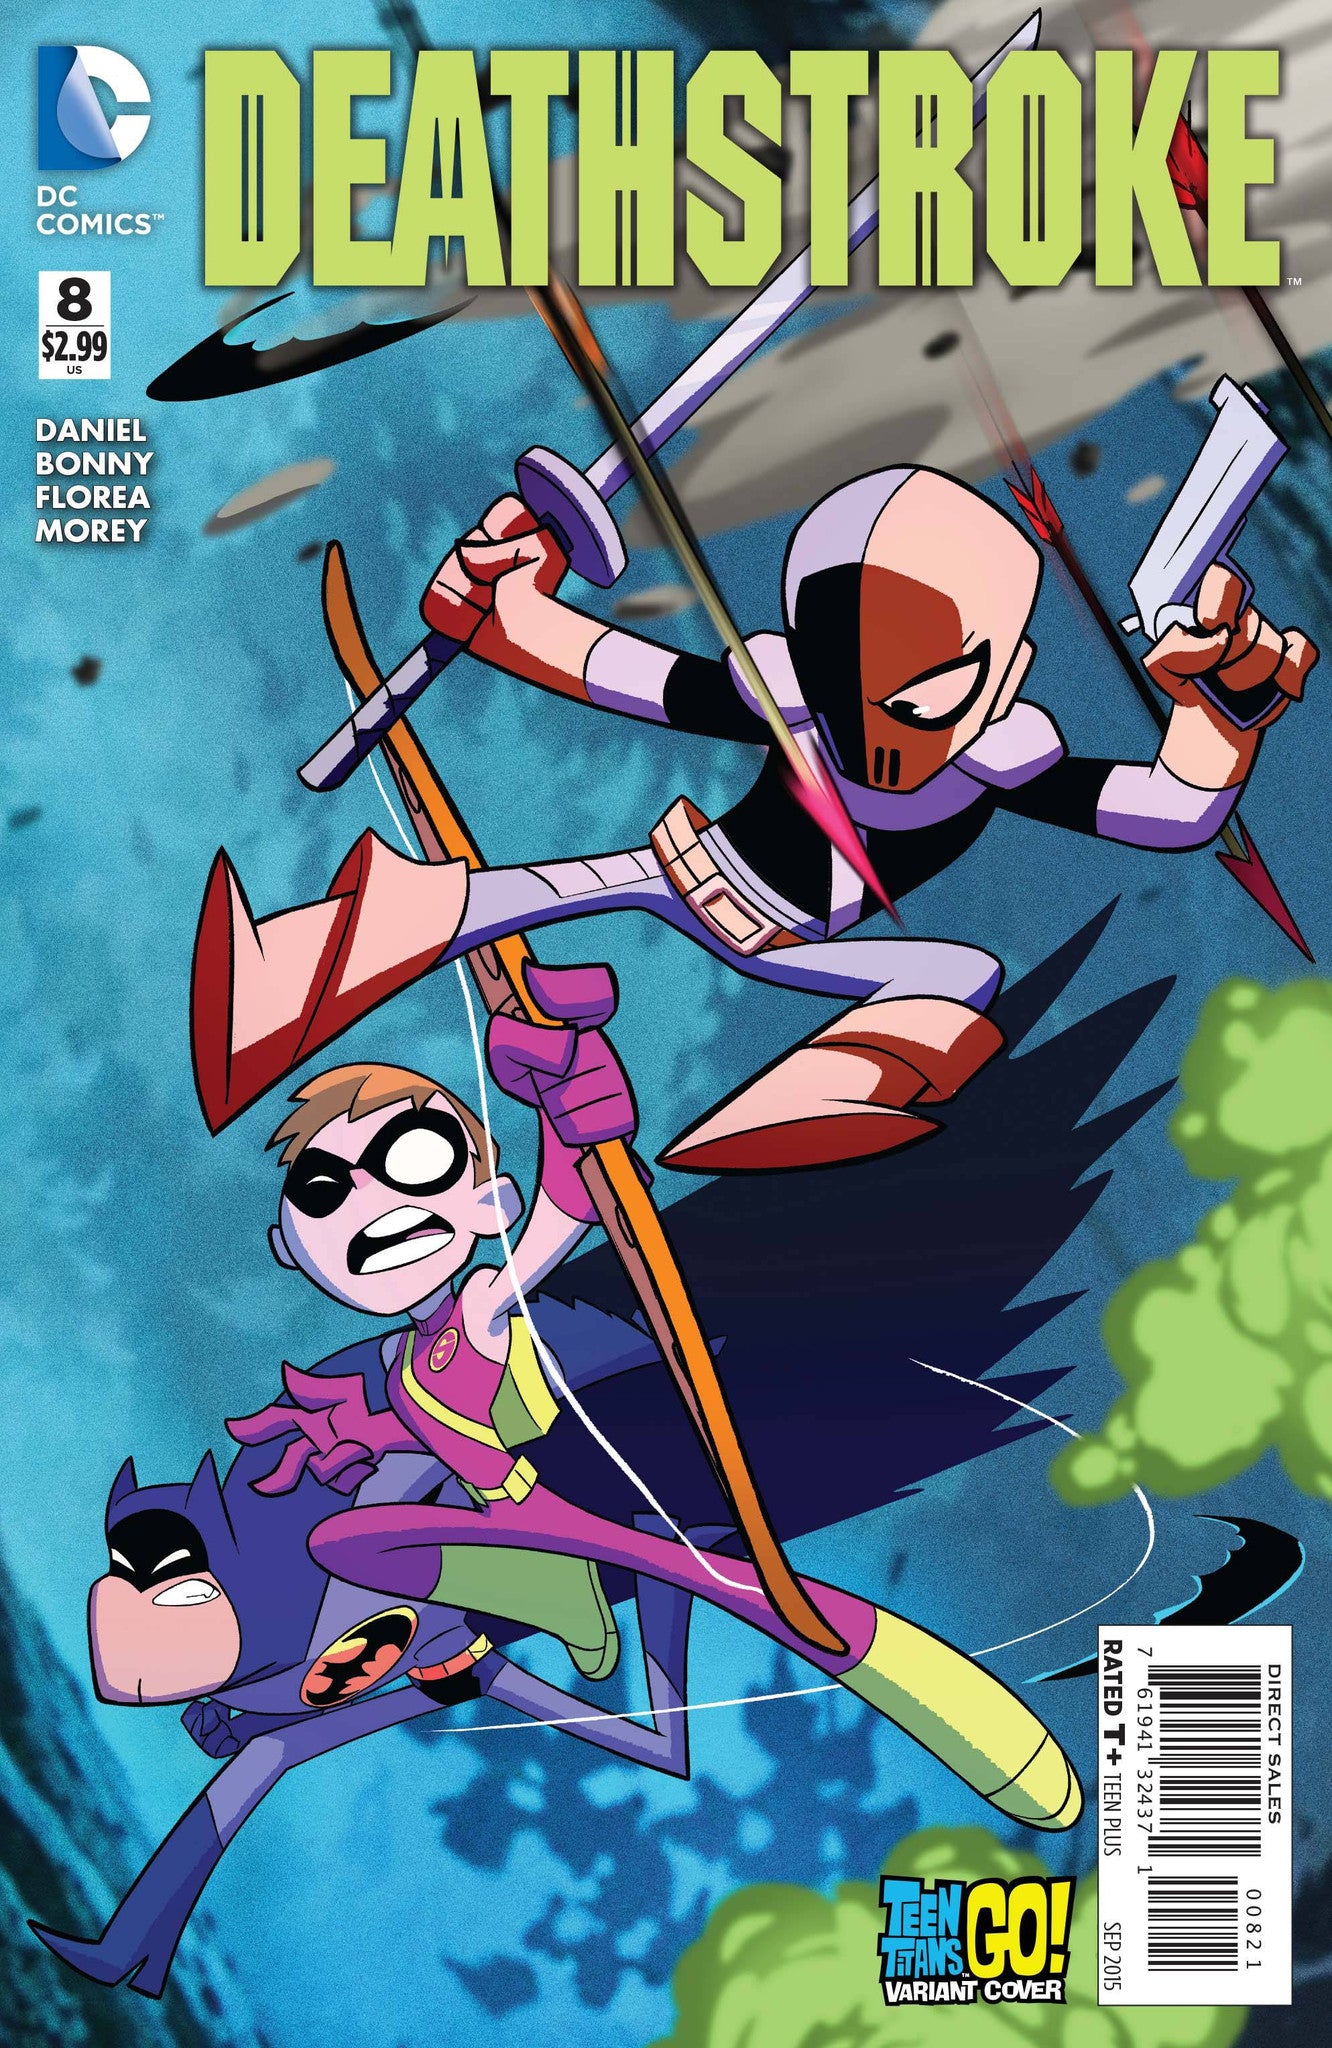 Deathstroke (2014) #8 "Teen Titans GO!" Variant